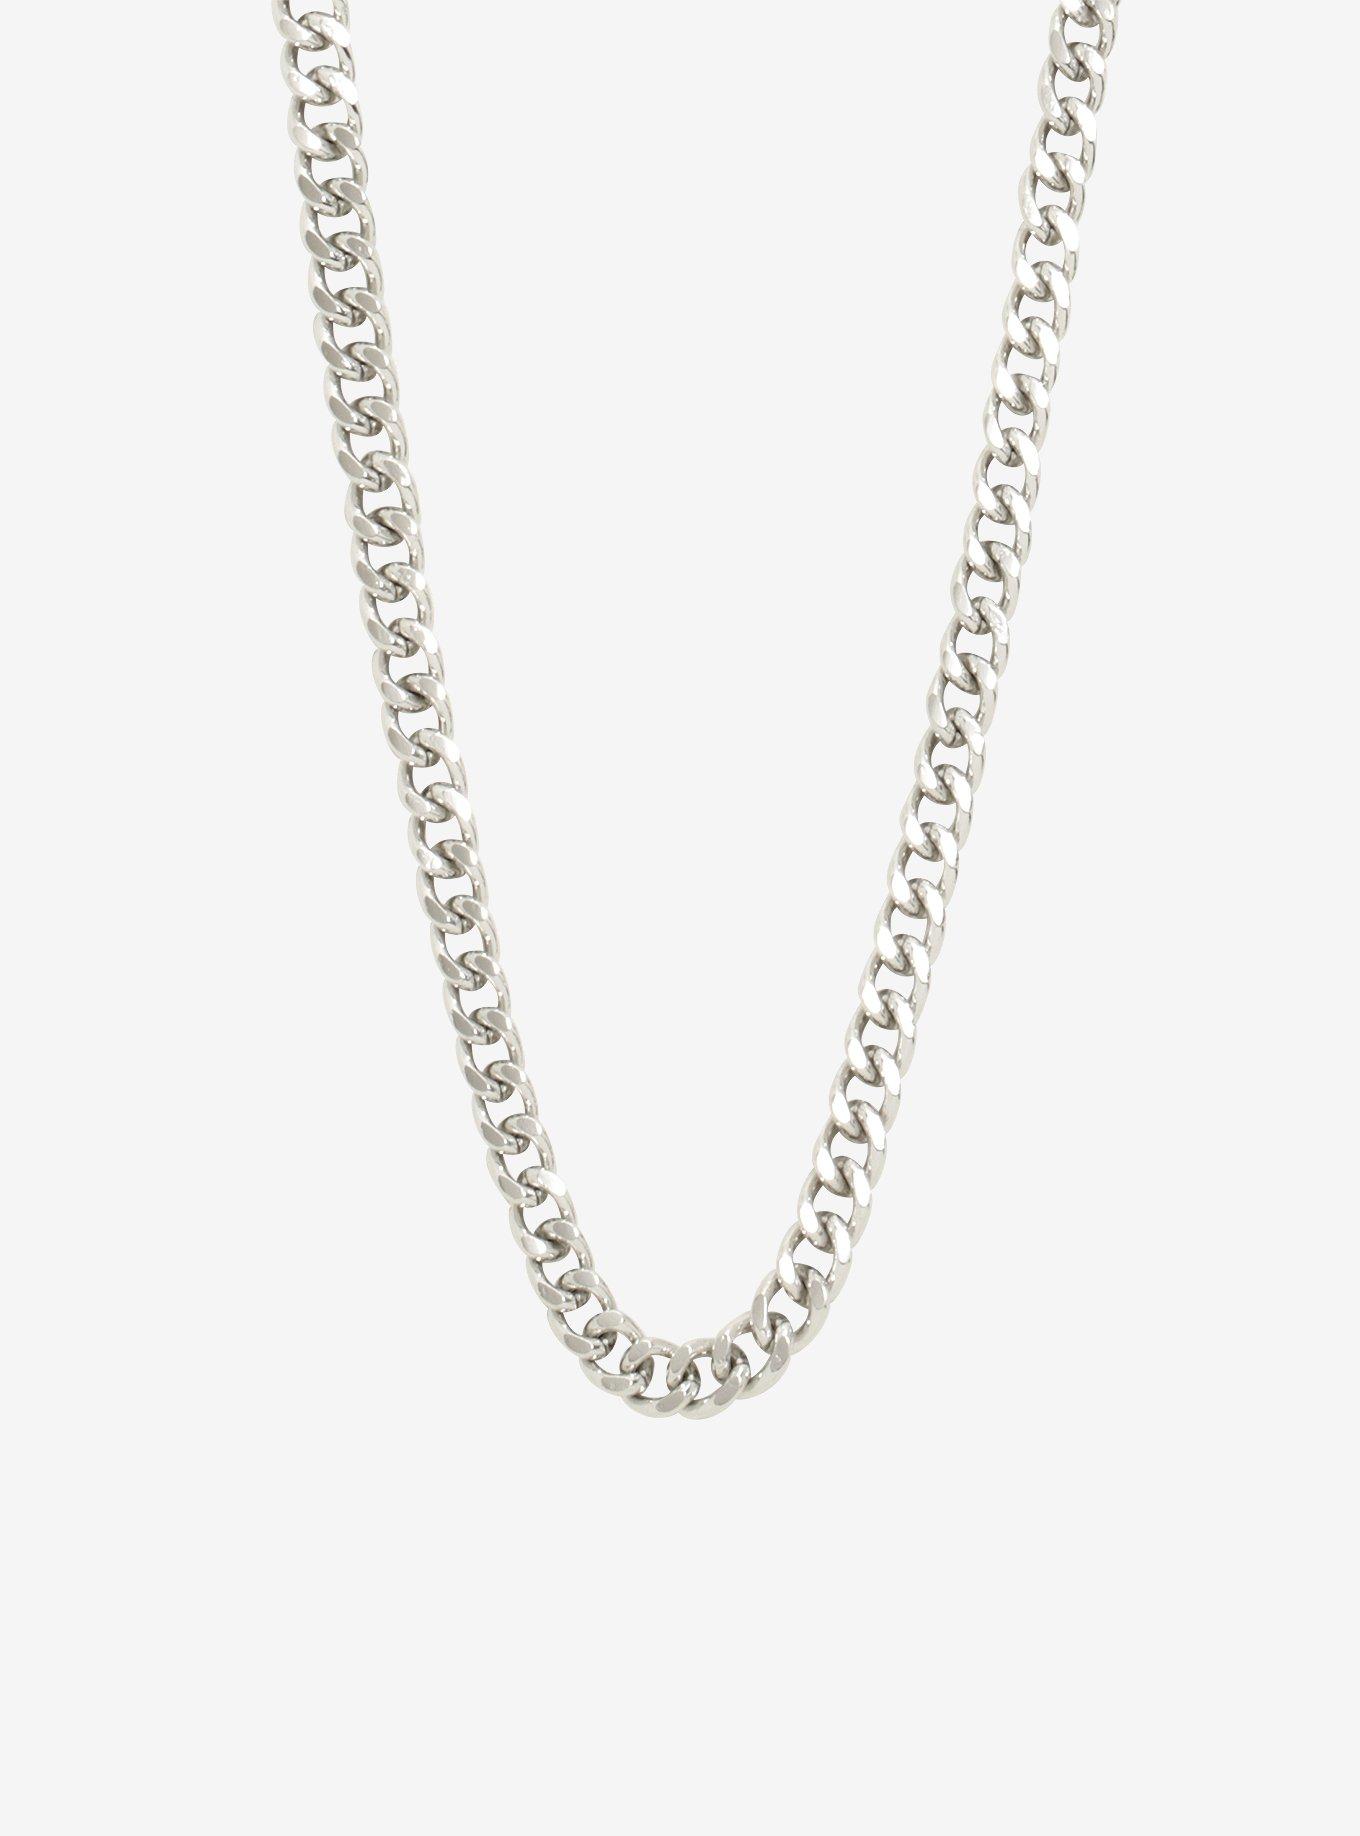 Silver Men's Chain Necklace, , hi-res